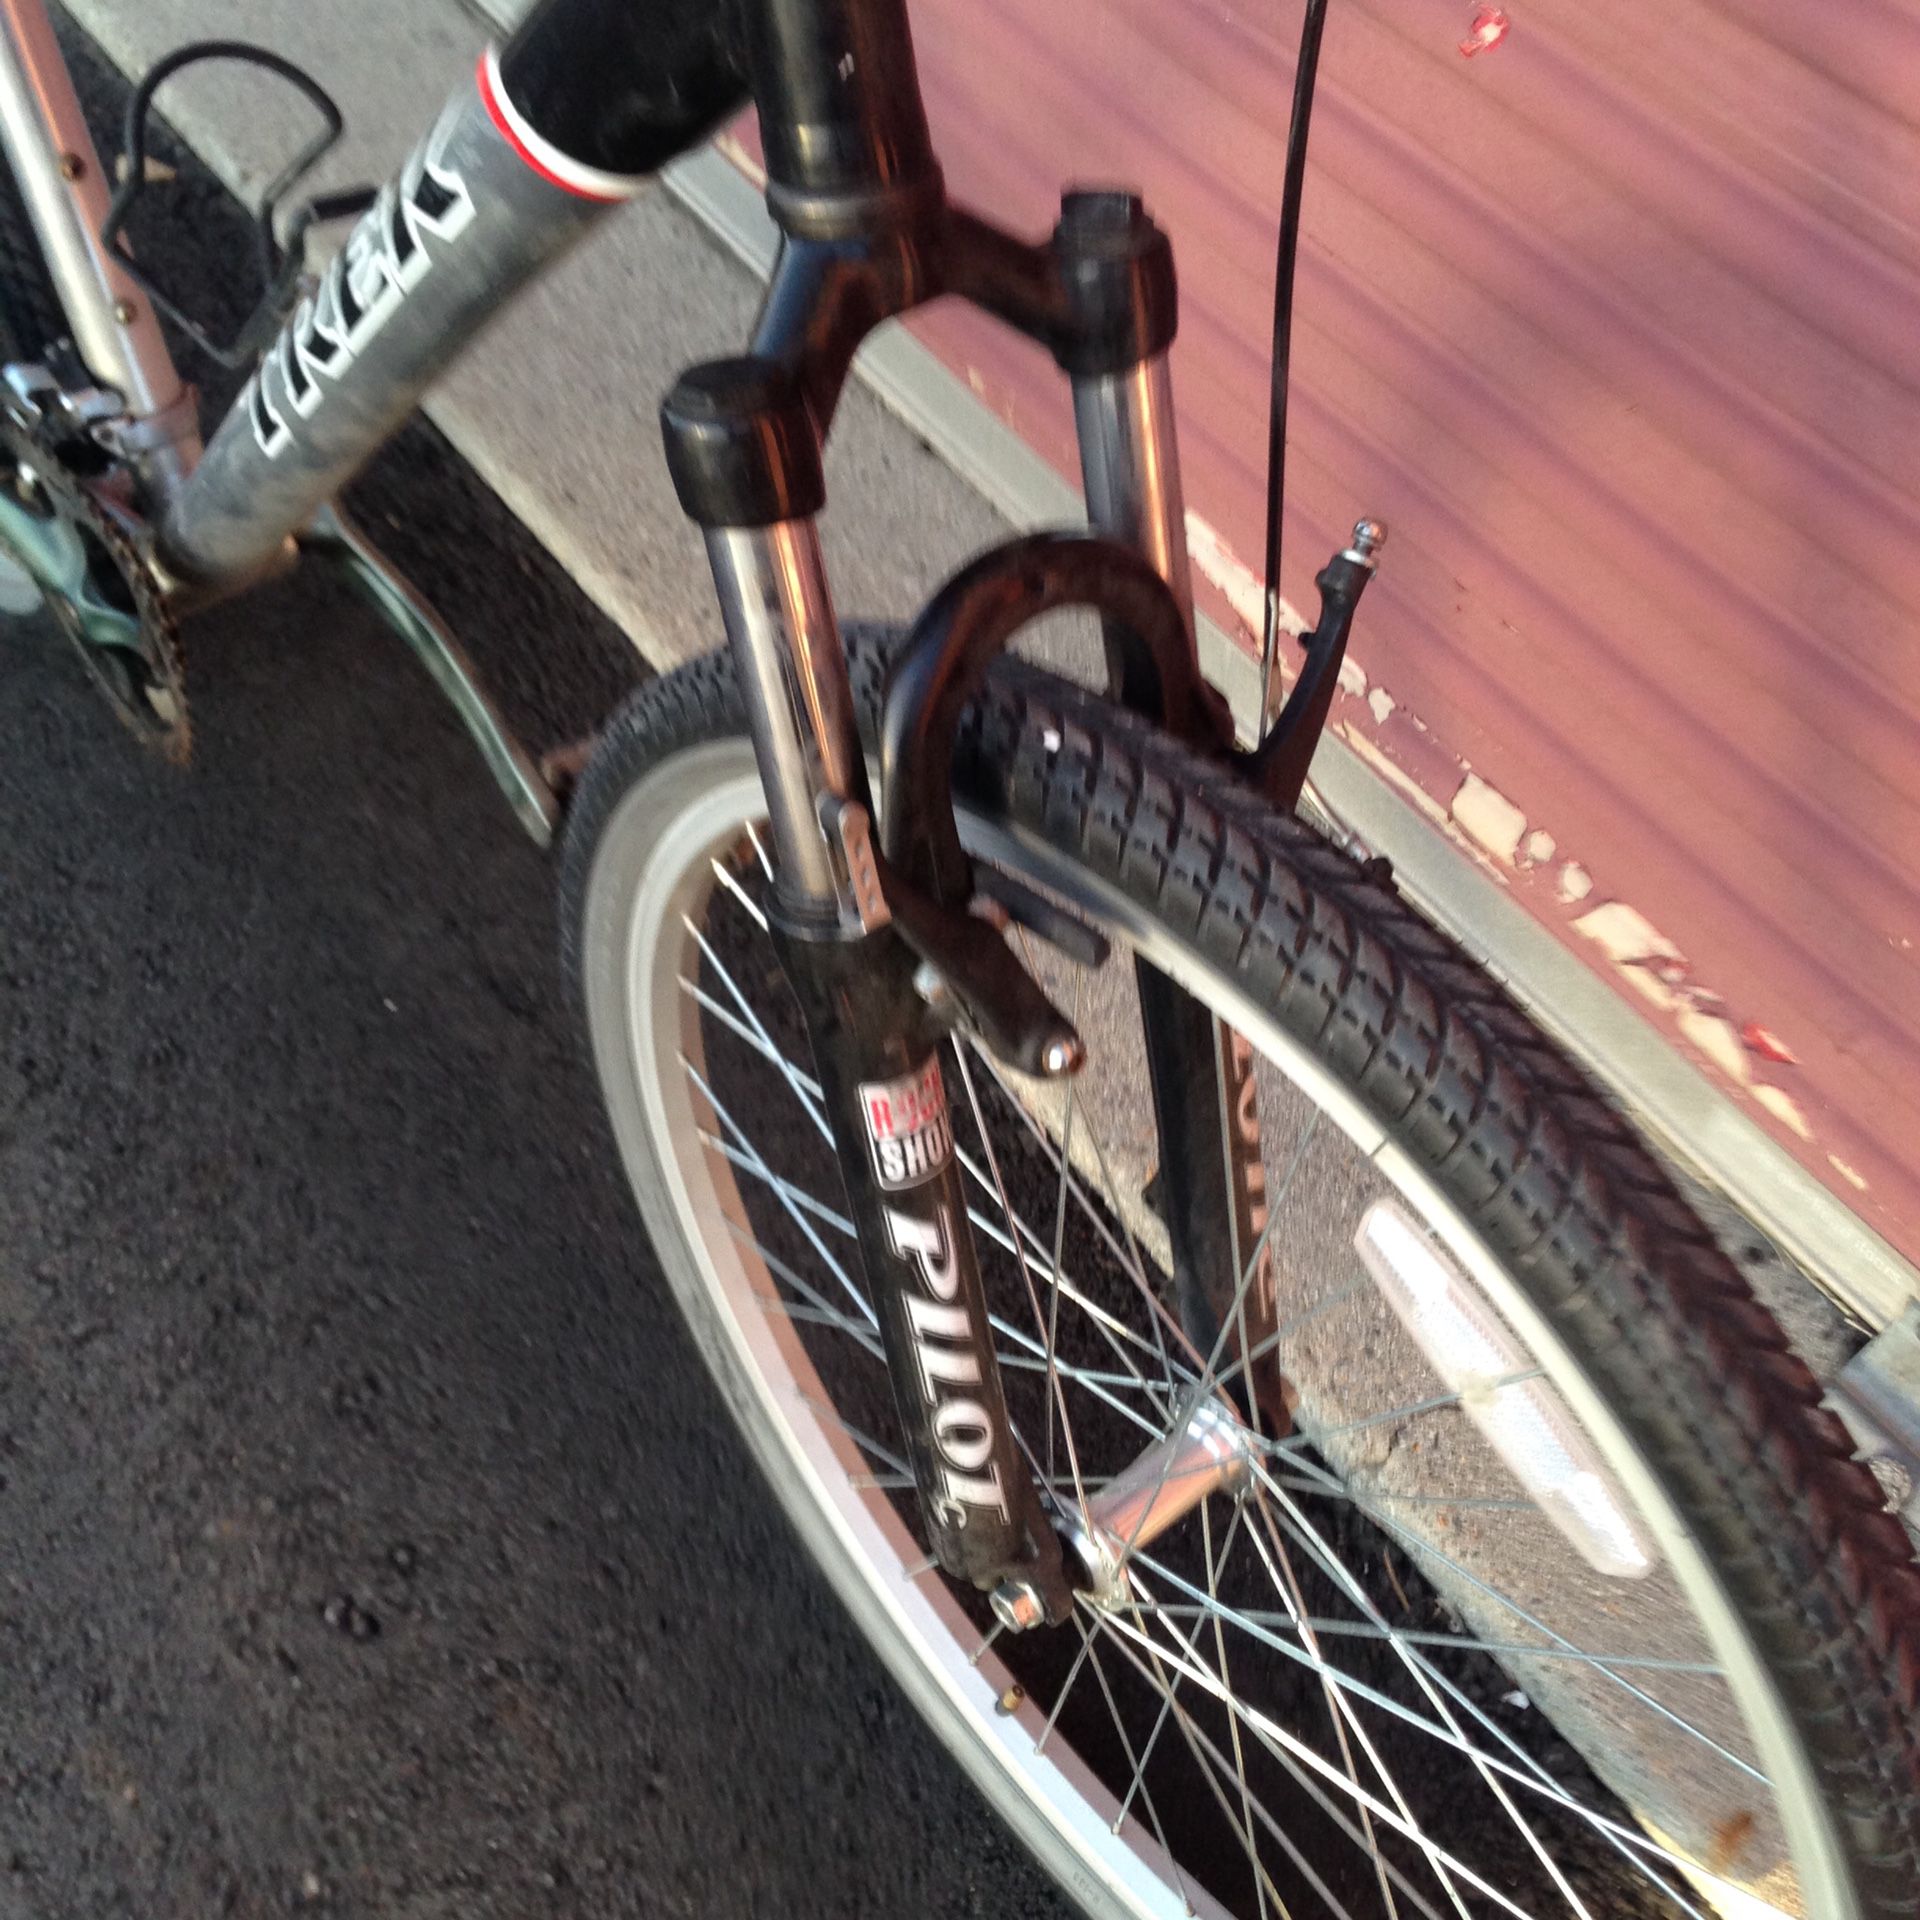 Trek mountain bikes full size full large frame mint condition 26 inch wheels disk brakes